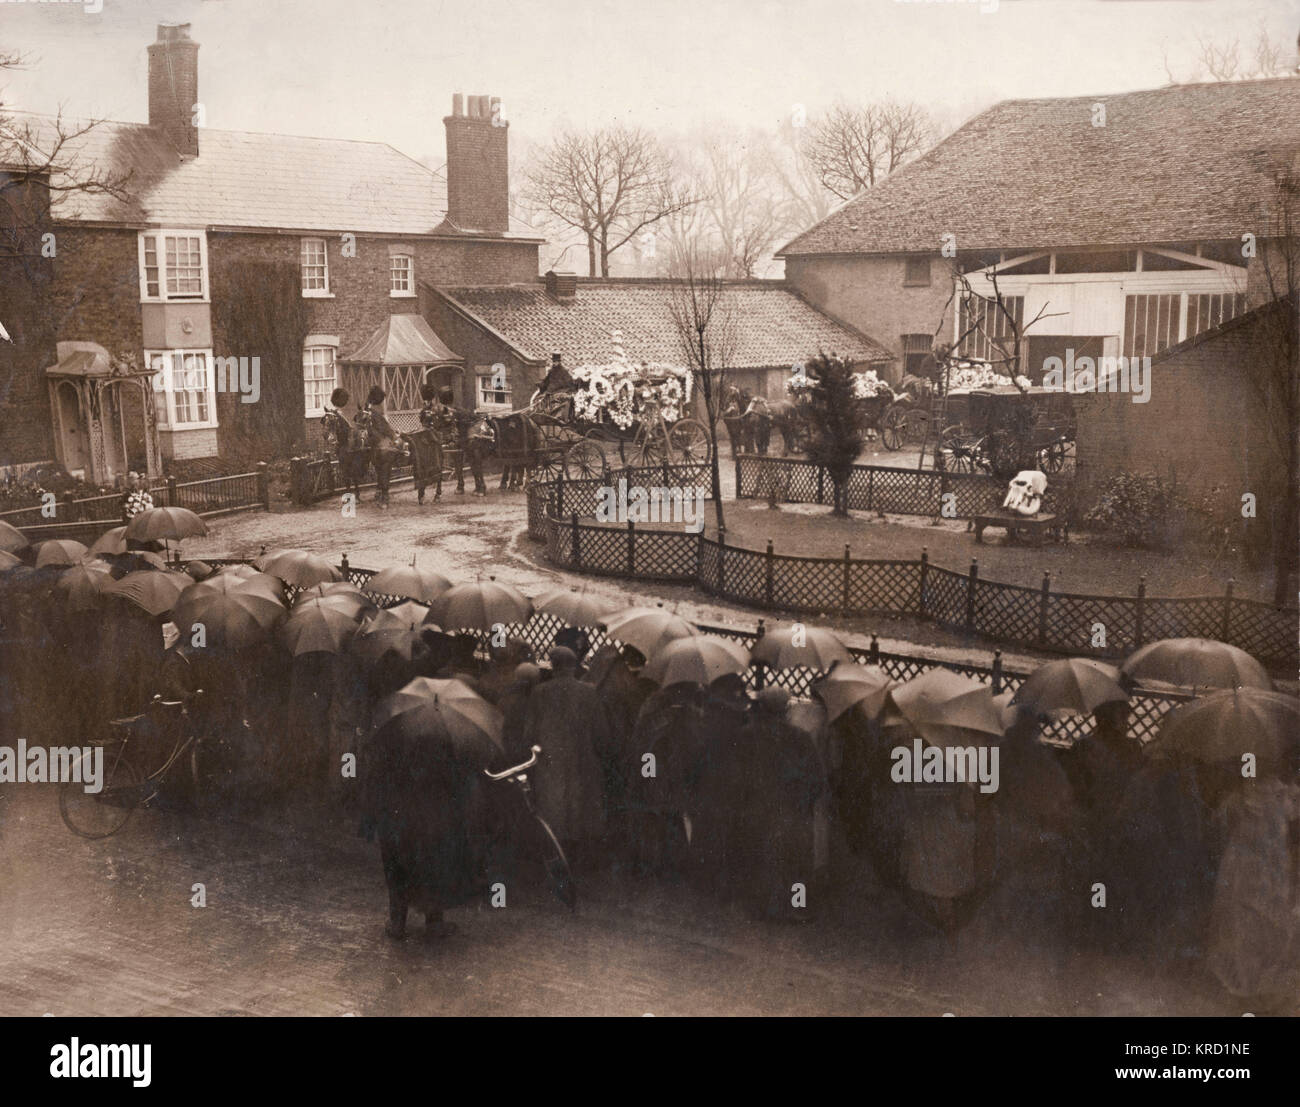 La procession funéraire de l 'Éternel' George Sanger (1827-1911), laissant dans Park Farm, East Finchley au Nord de Londres. Sanger était un célèbre impresario de cirque, mise en scène de spectacles de grande envergure tels que l'Amphithéâtre Astley et l'Agricultural Hall dans Islington. Son mémoire, soixante-dix ans un showman, a été publié en 1908. Malheureusement, il a été tué à la fin de novembre 1911 par une course folle à l'employé sa ferme de East Finchley. Les funérailles ont été toute une aventure, et les routes à partir de la station de métro Finchley à Holborn Viaduct étaient bordées de personnes à l'abri de la pluie sous des parapluies noirs. Le cercueil a été t Banque D'Images